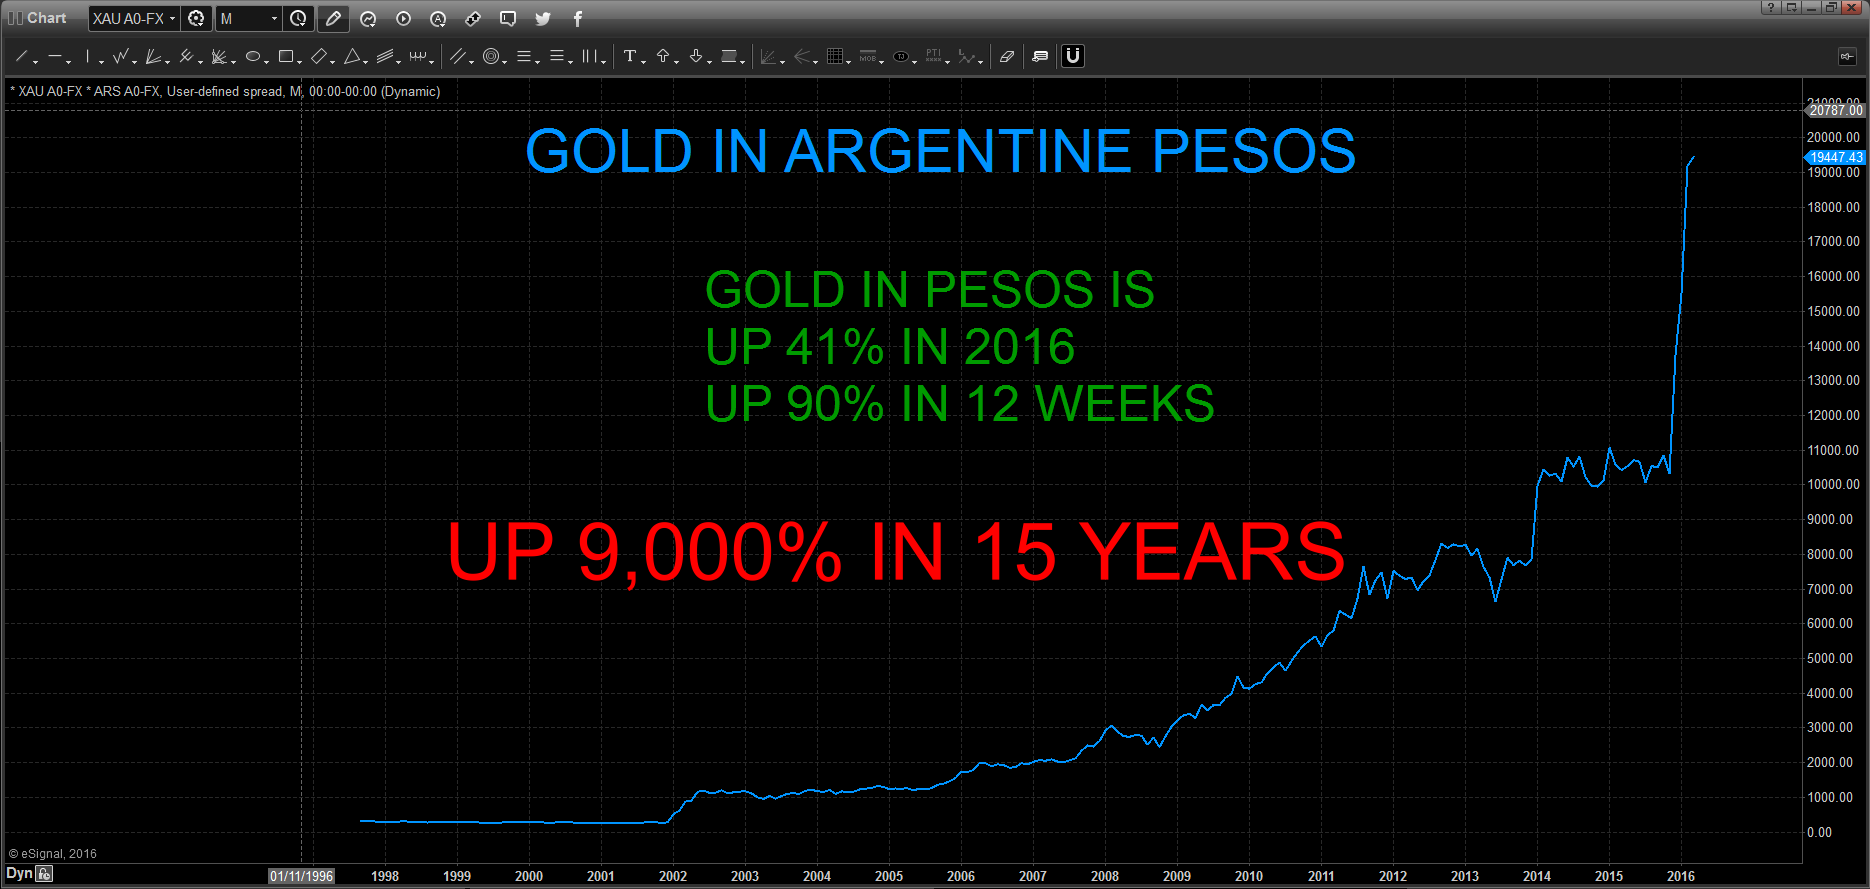 Gold in Argentine Pesos